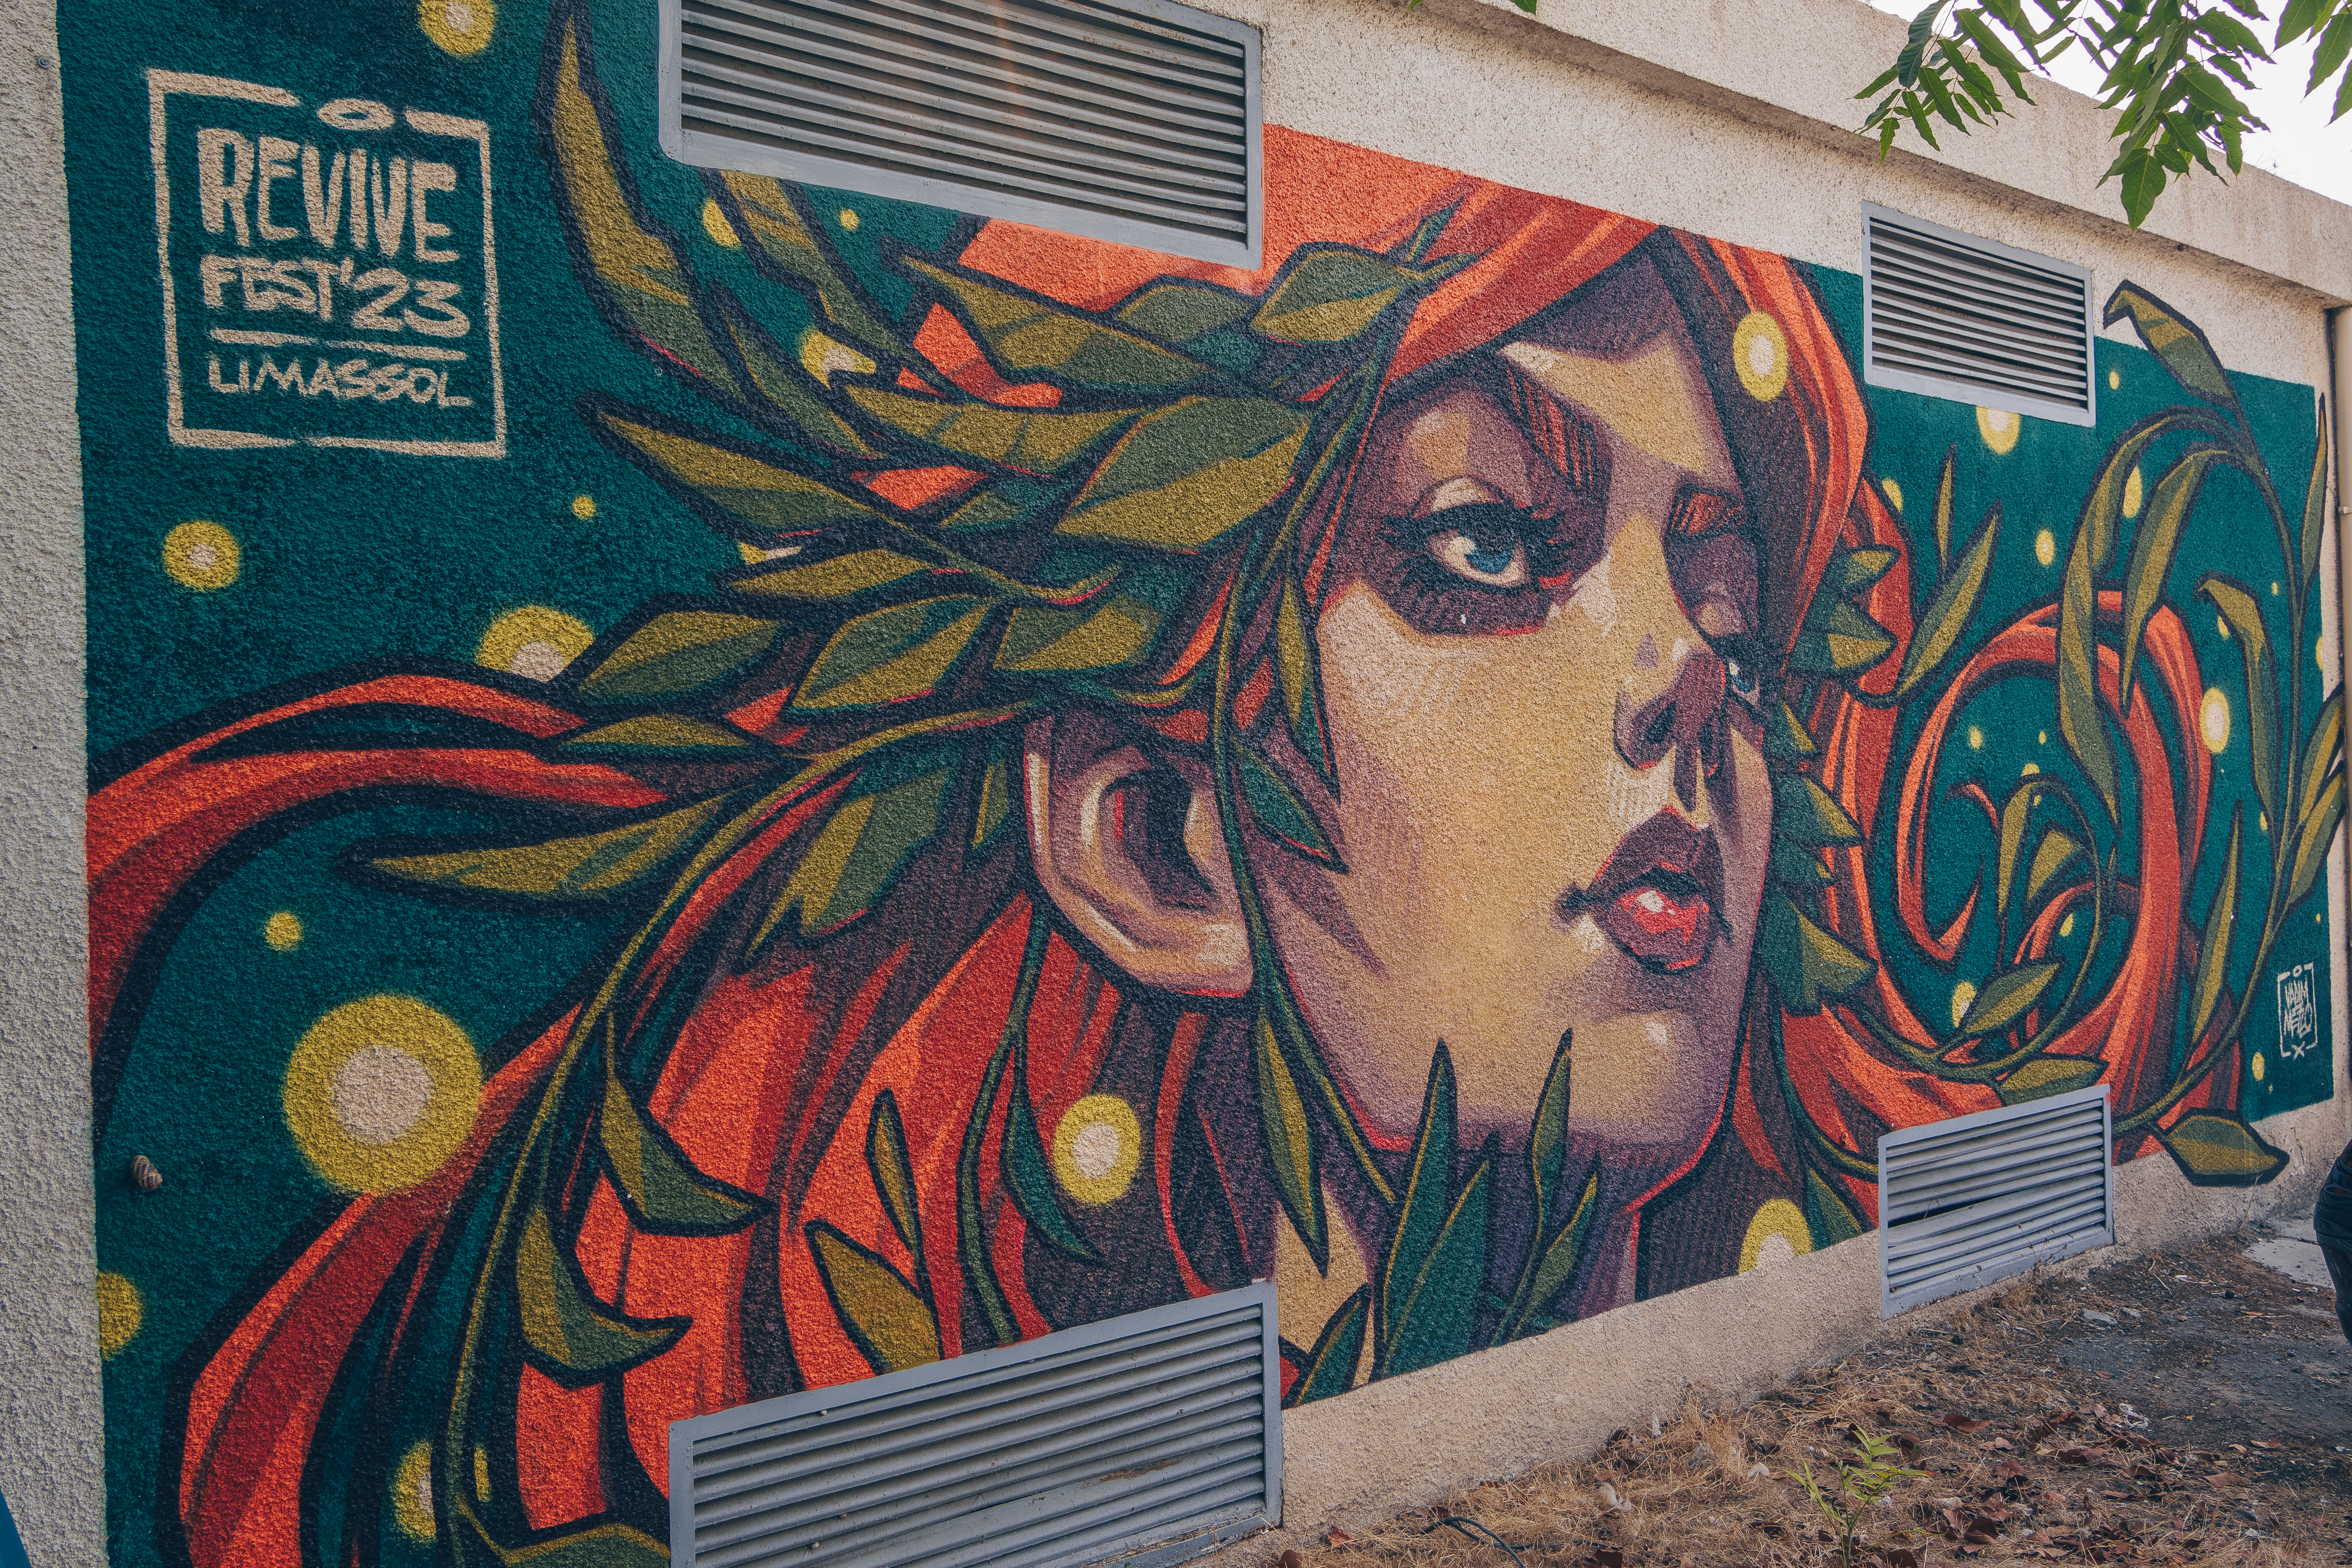 Fighting graffiti with graffiti: street art comes to Limassol